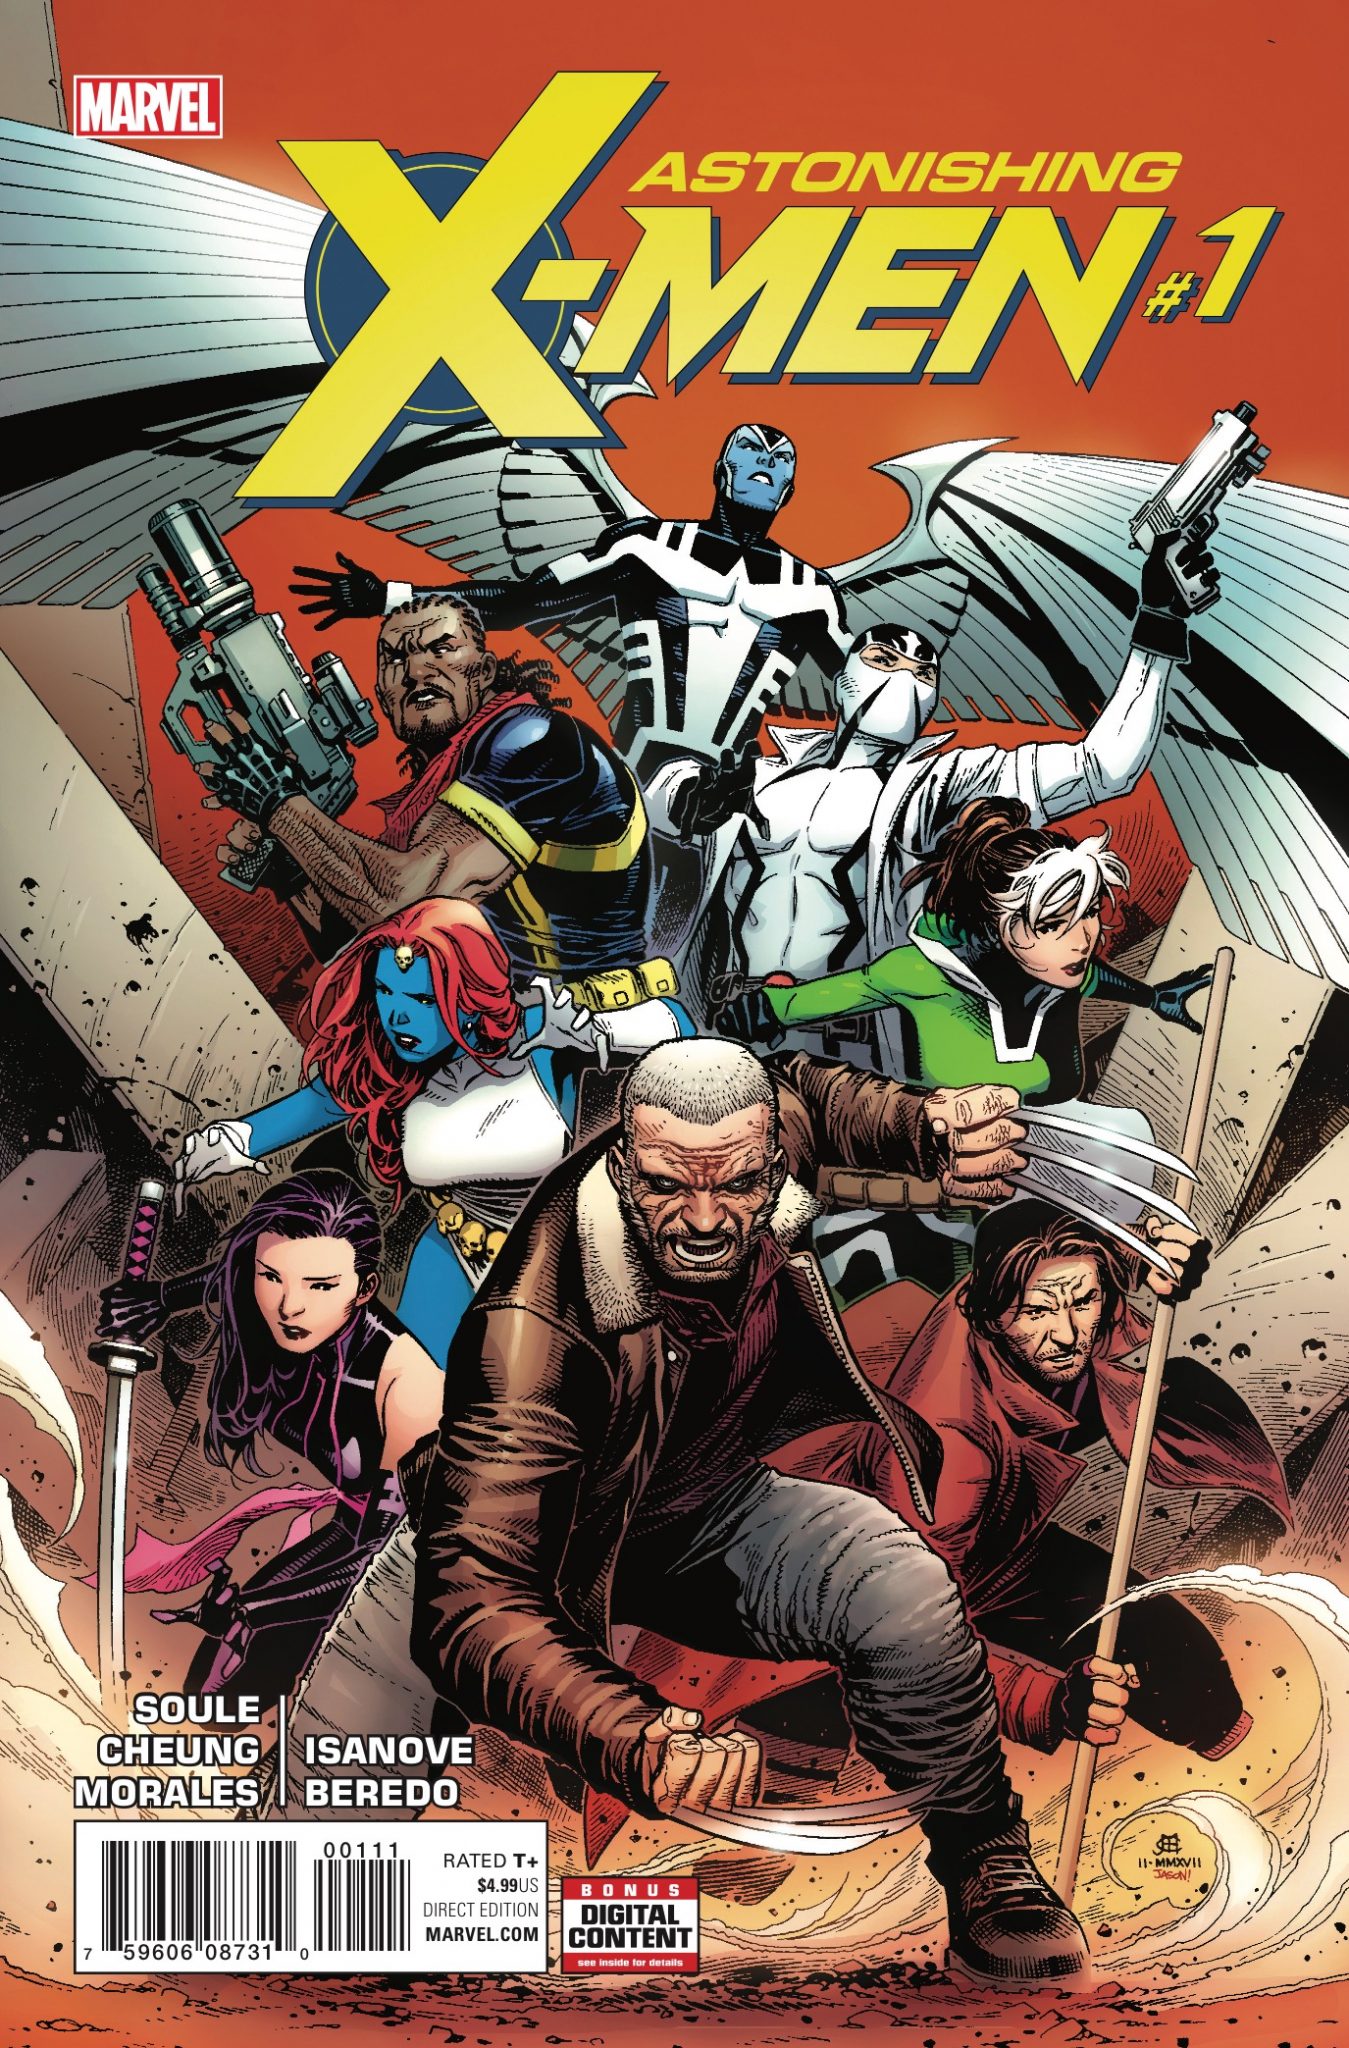 Marvel Preview: Astonishing X-Men #1